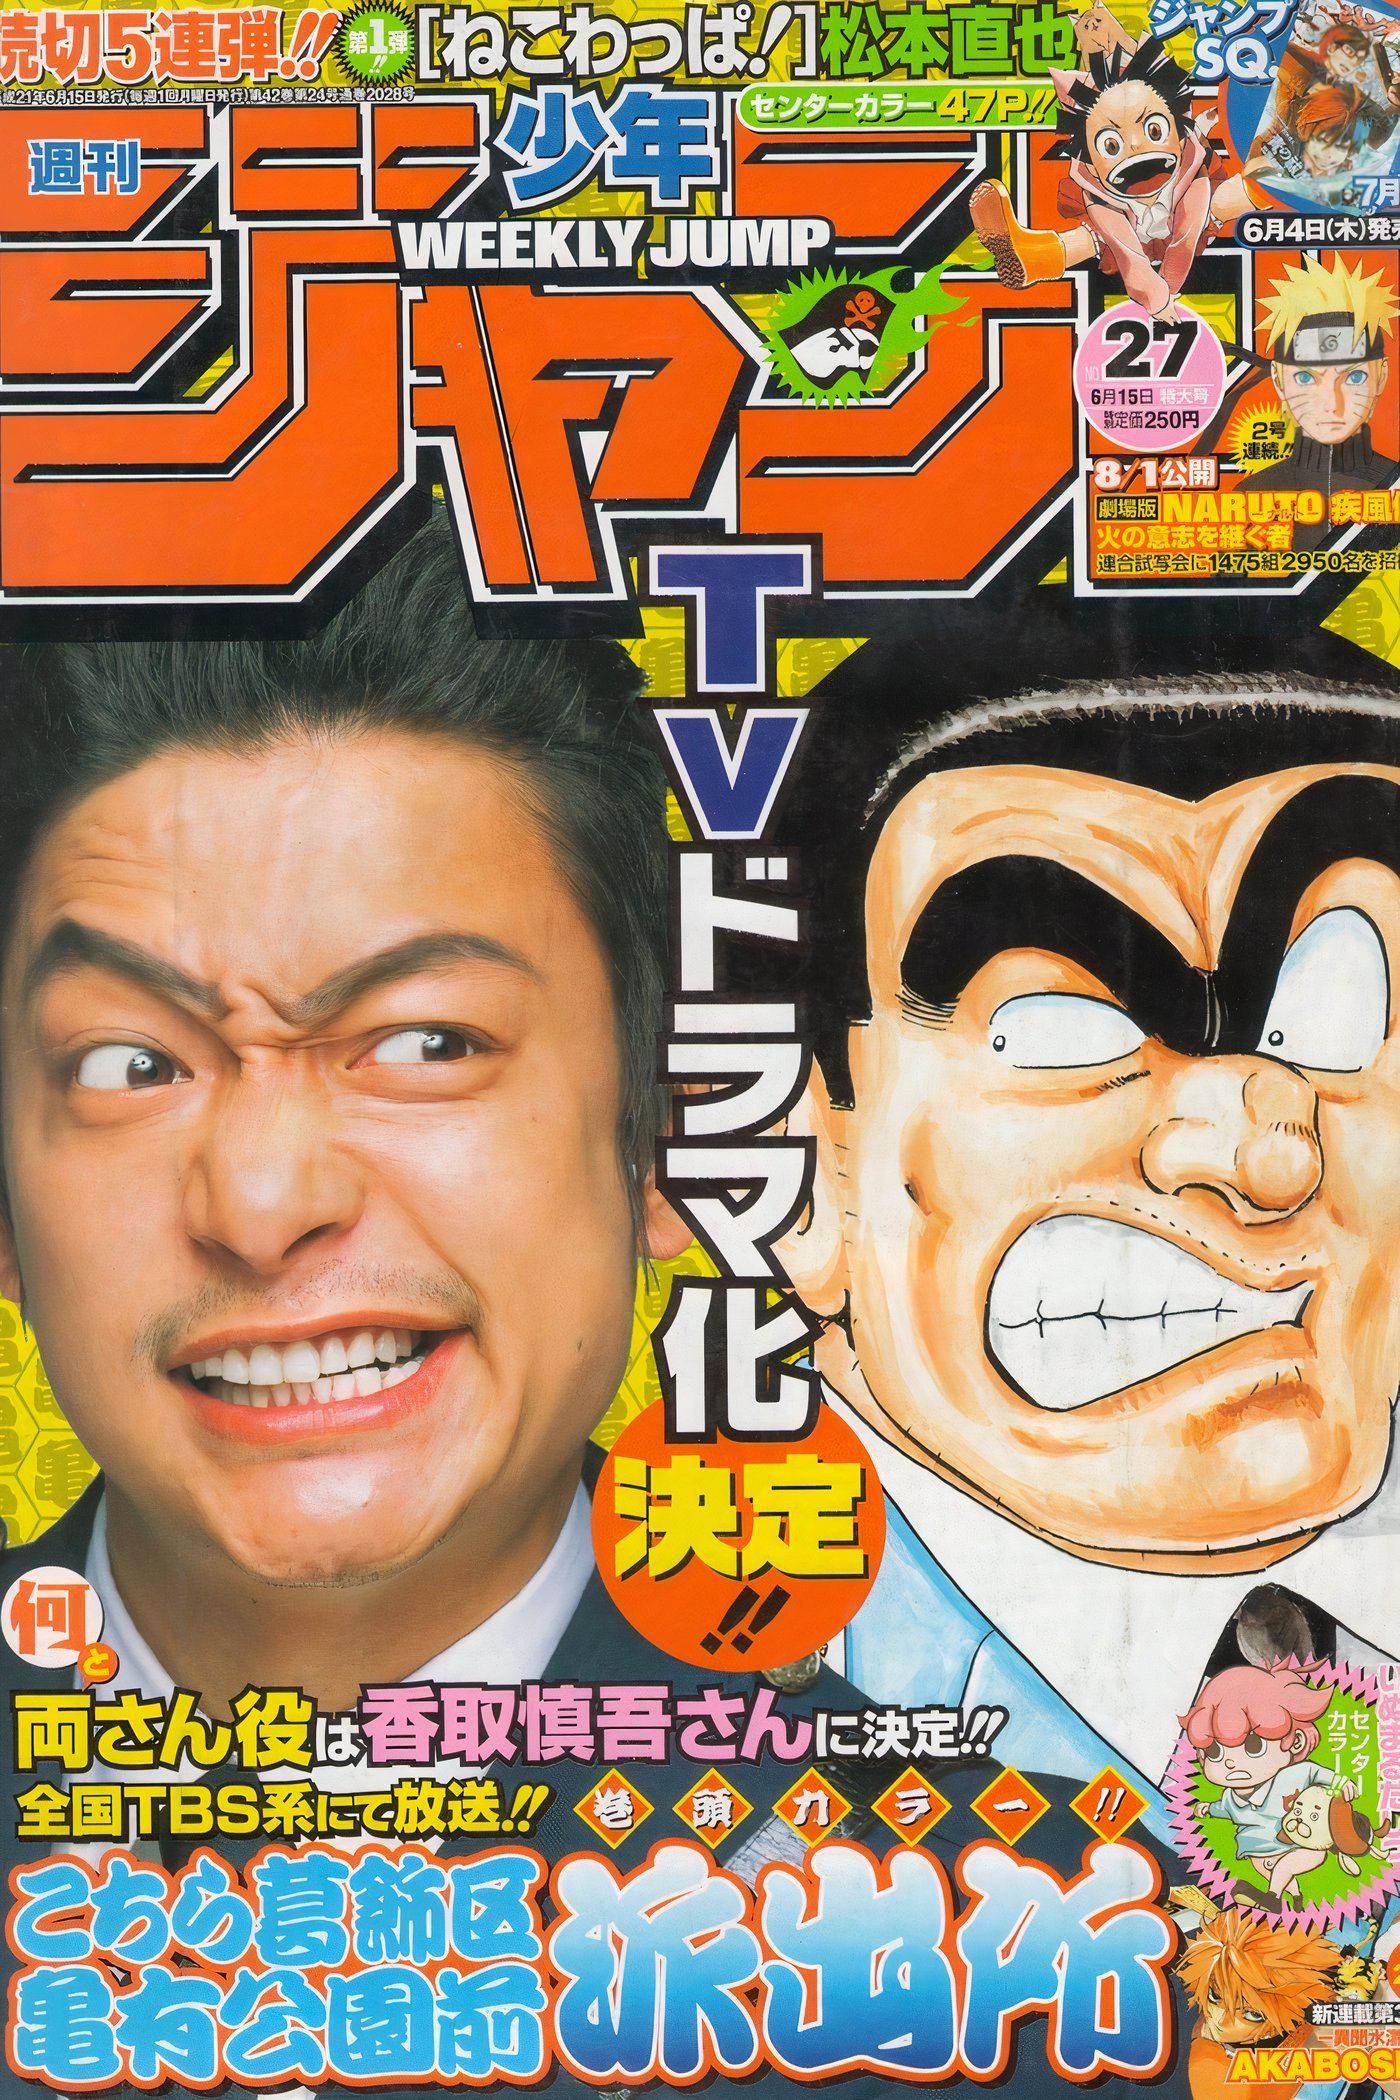 KochiKame Weekly Shonen Jump Cover #2028 Adaptação do drama de TV KochiKame